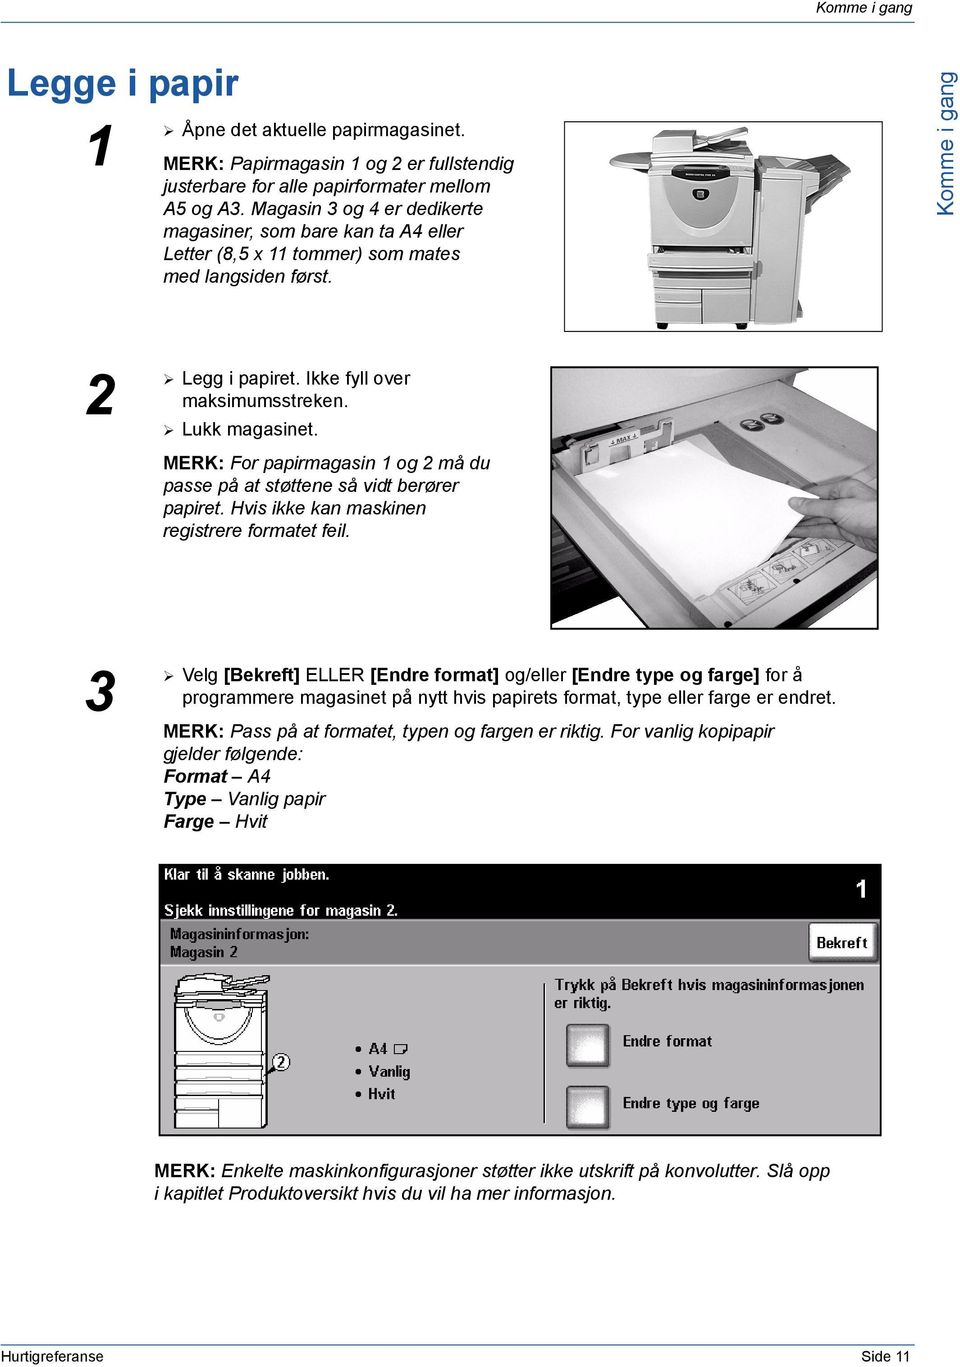 MERK: For papirmagasin og 2 må du passe på at støttene så vidt berører papiret. Hvis ikke kan maskinen registrere formatet feil.